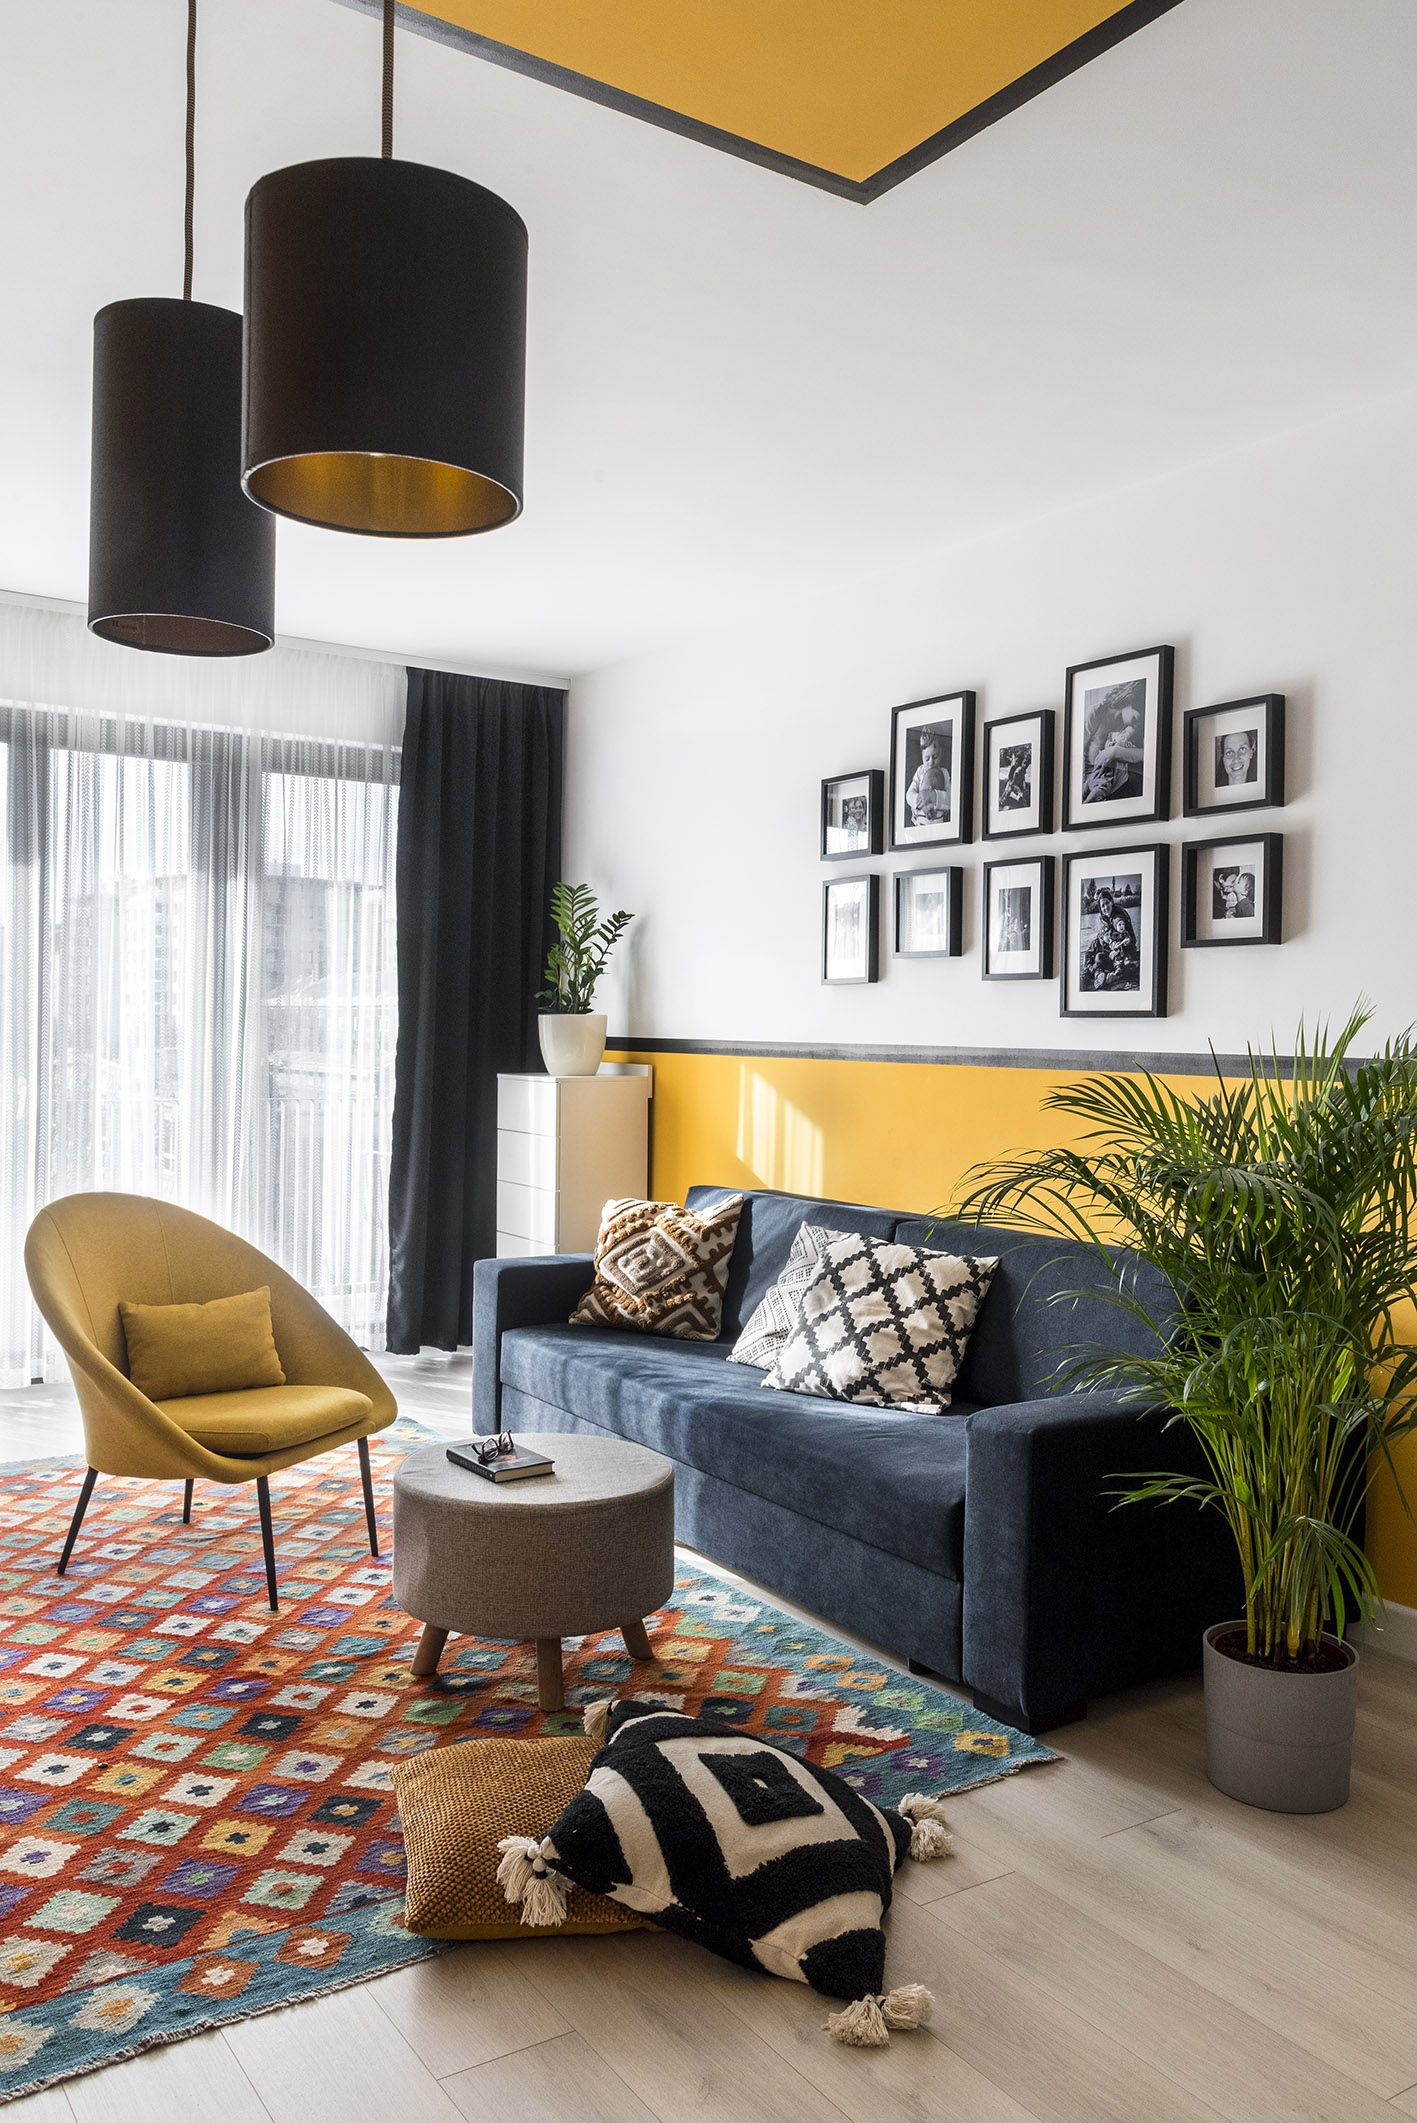  A tervezés kiindulópontját jelentő Kilim szőnyeg színes, geometrikus mintáihoz jól illenek a kanapé díszpárnái és az egyedi, sárga falburkolat, de a szintén egyedi tervezésű könyvszekrény is sajátos hangulatot kölcsönöz a nappalinak.